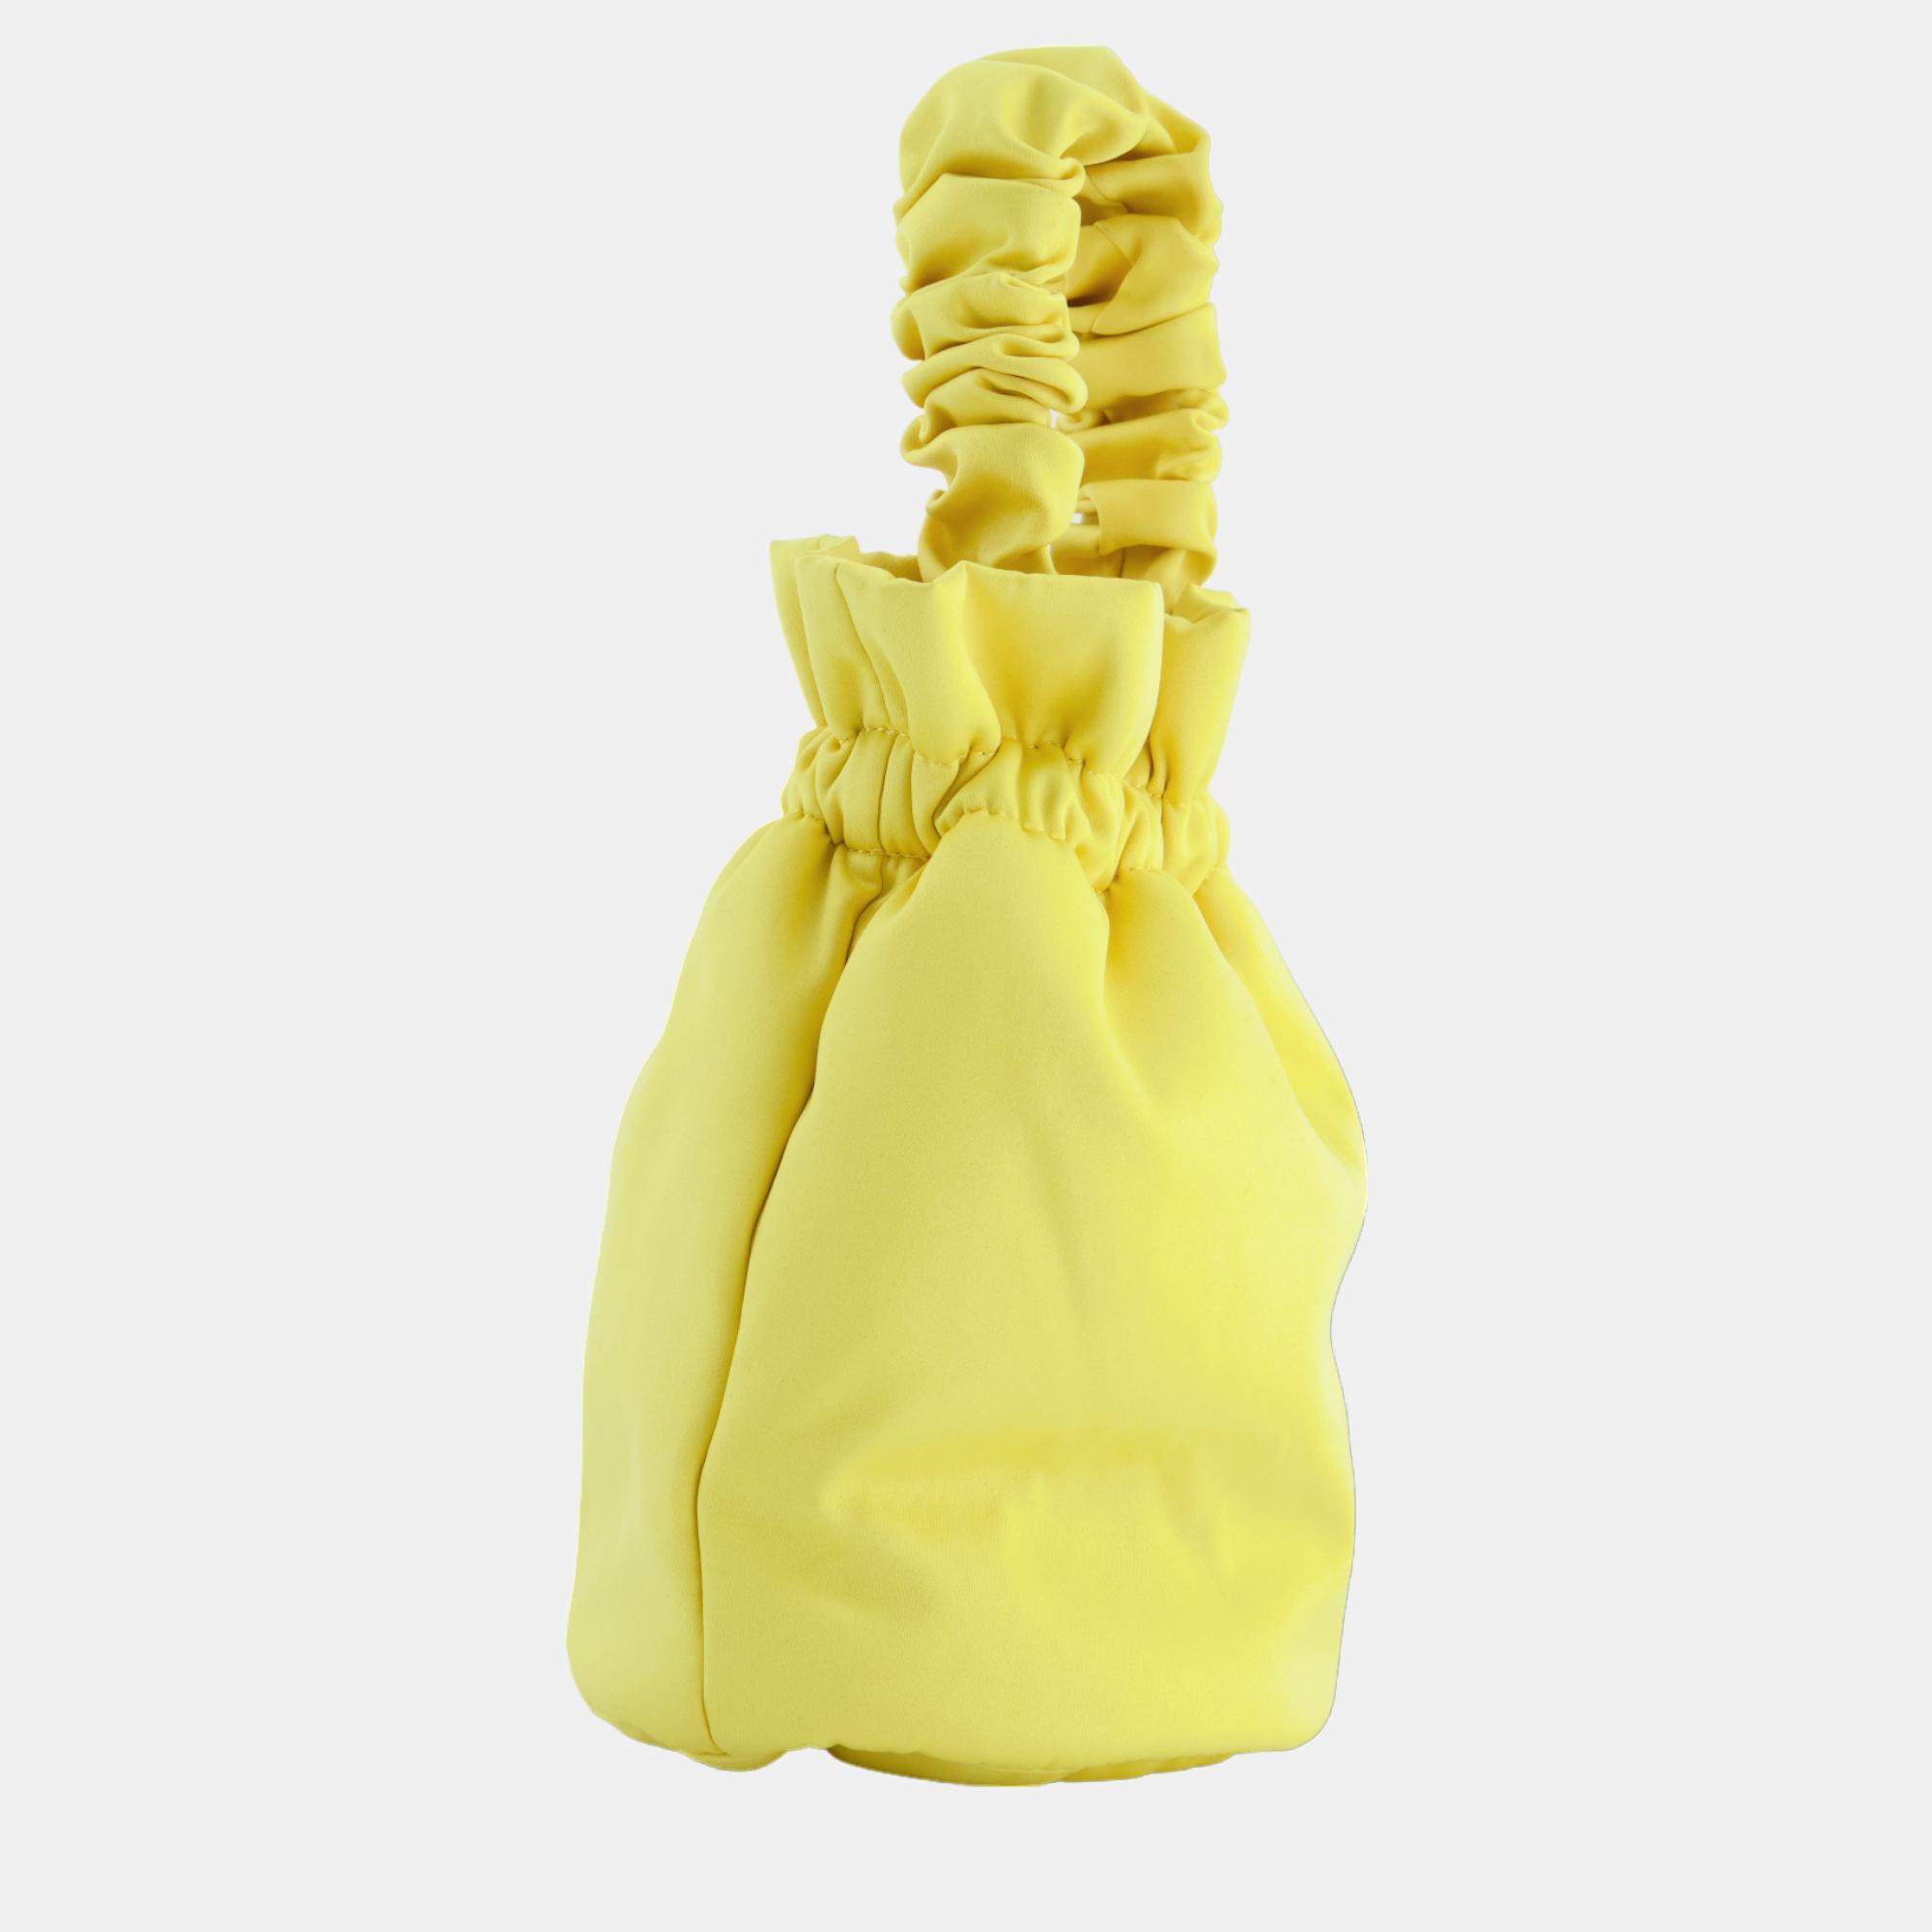 Ganni Yellow Satin Evening Bucket Bag